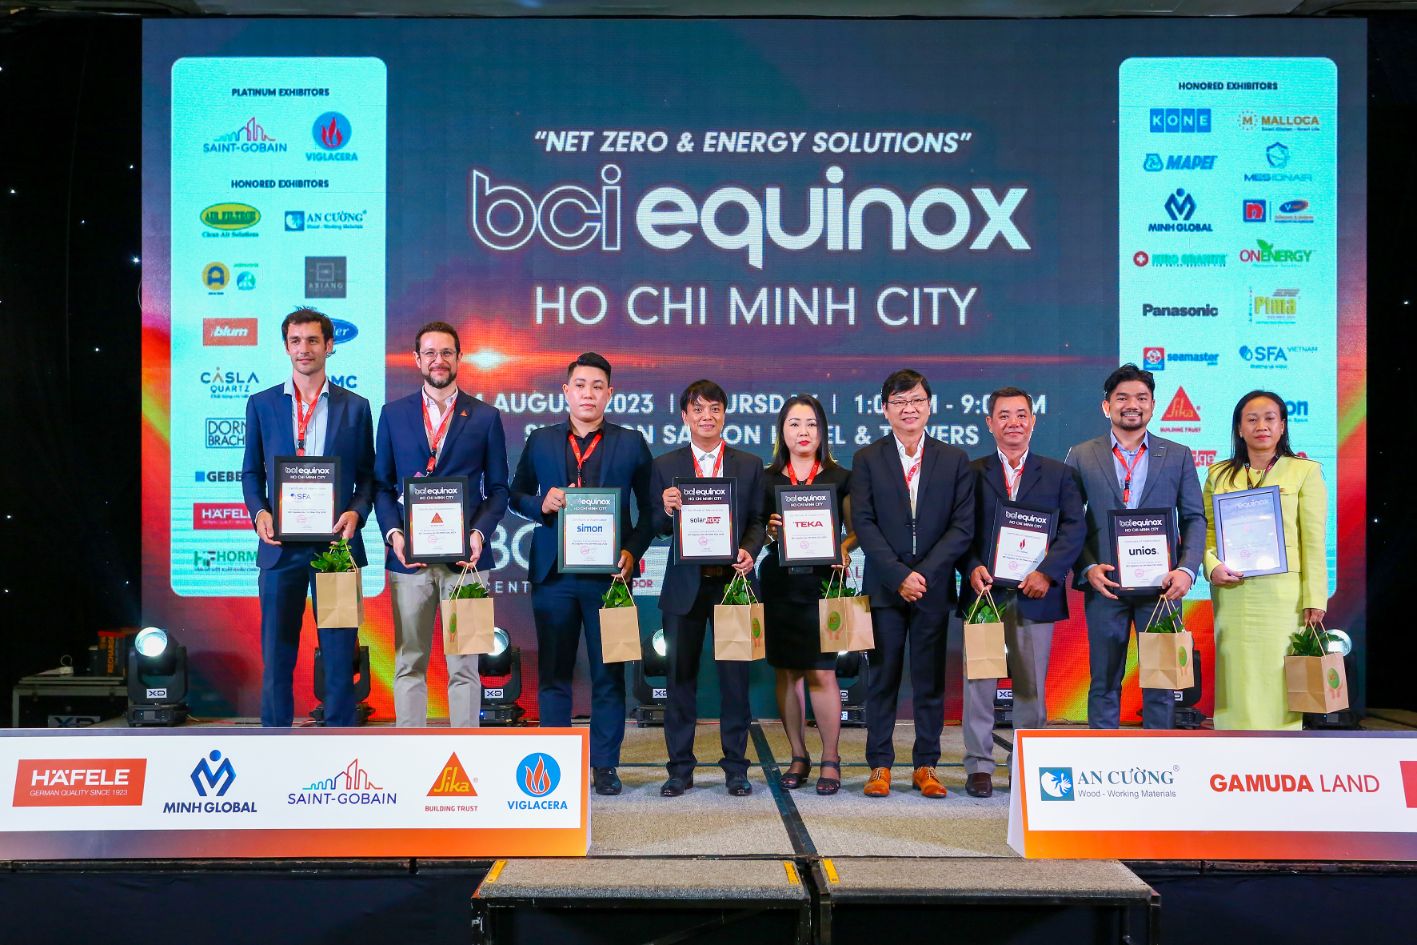 Ông Jacobo Perez Polaino cùng các nhà tài trợ khác nhận kỷ niệm chương từ ban tổ chức BCI Equinox Sika Việt Nam giới thiệu giải pháp thực tiễn giảm khí nhà kính trong xây dựng